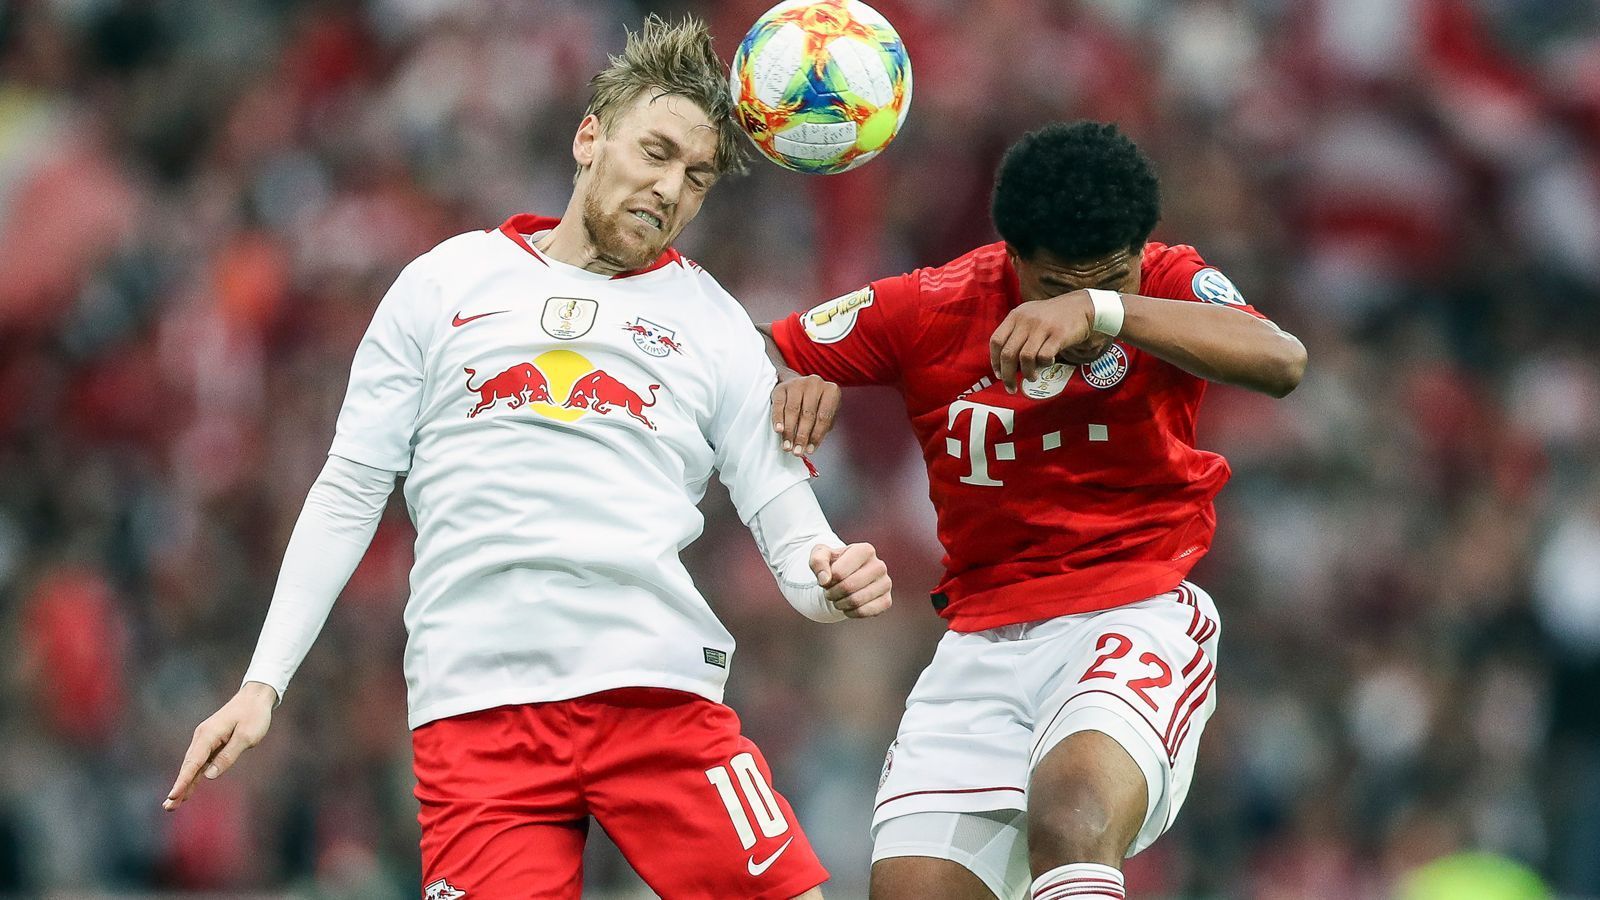 
                <strong>4. Spieltag</strong><br>
                Am 4. Spieltag (13.-15. September) hat RB Leipzig die Chance zur Revanche für das zuletzt verlorene DFB-Pokalfinale im Mai 2019, wenn der Gegner der Sachsen erneut FC Bayern München heißt. 
              